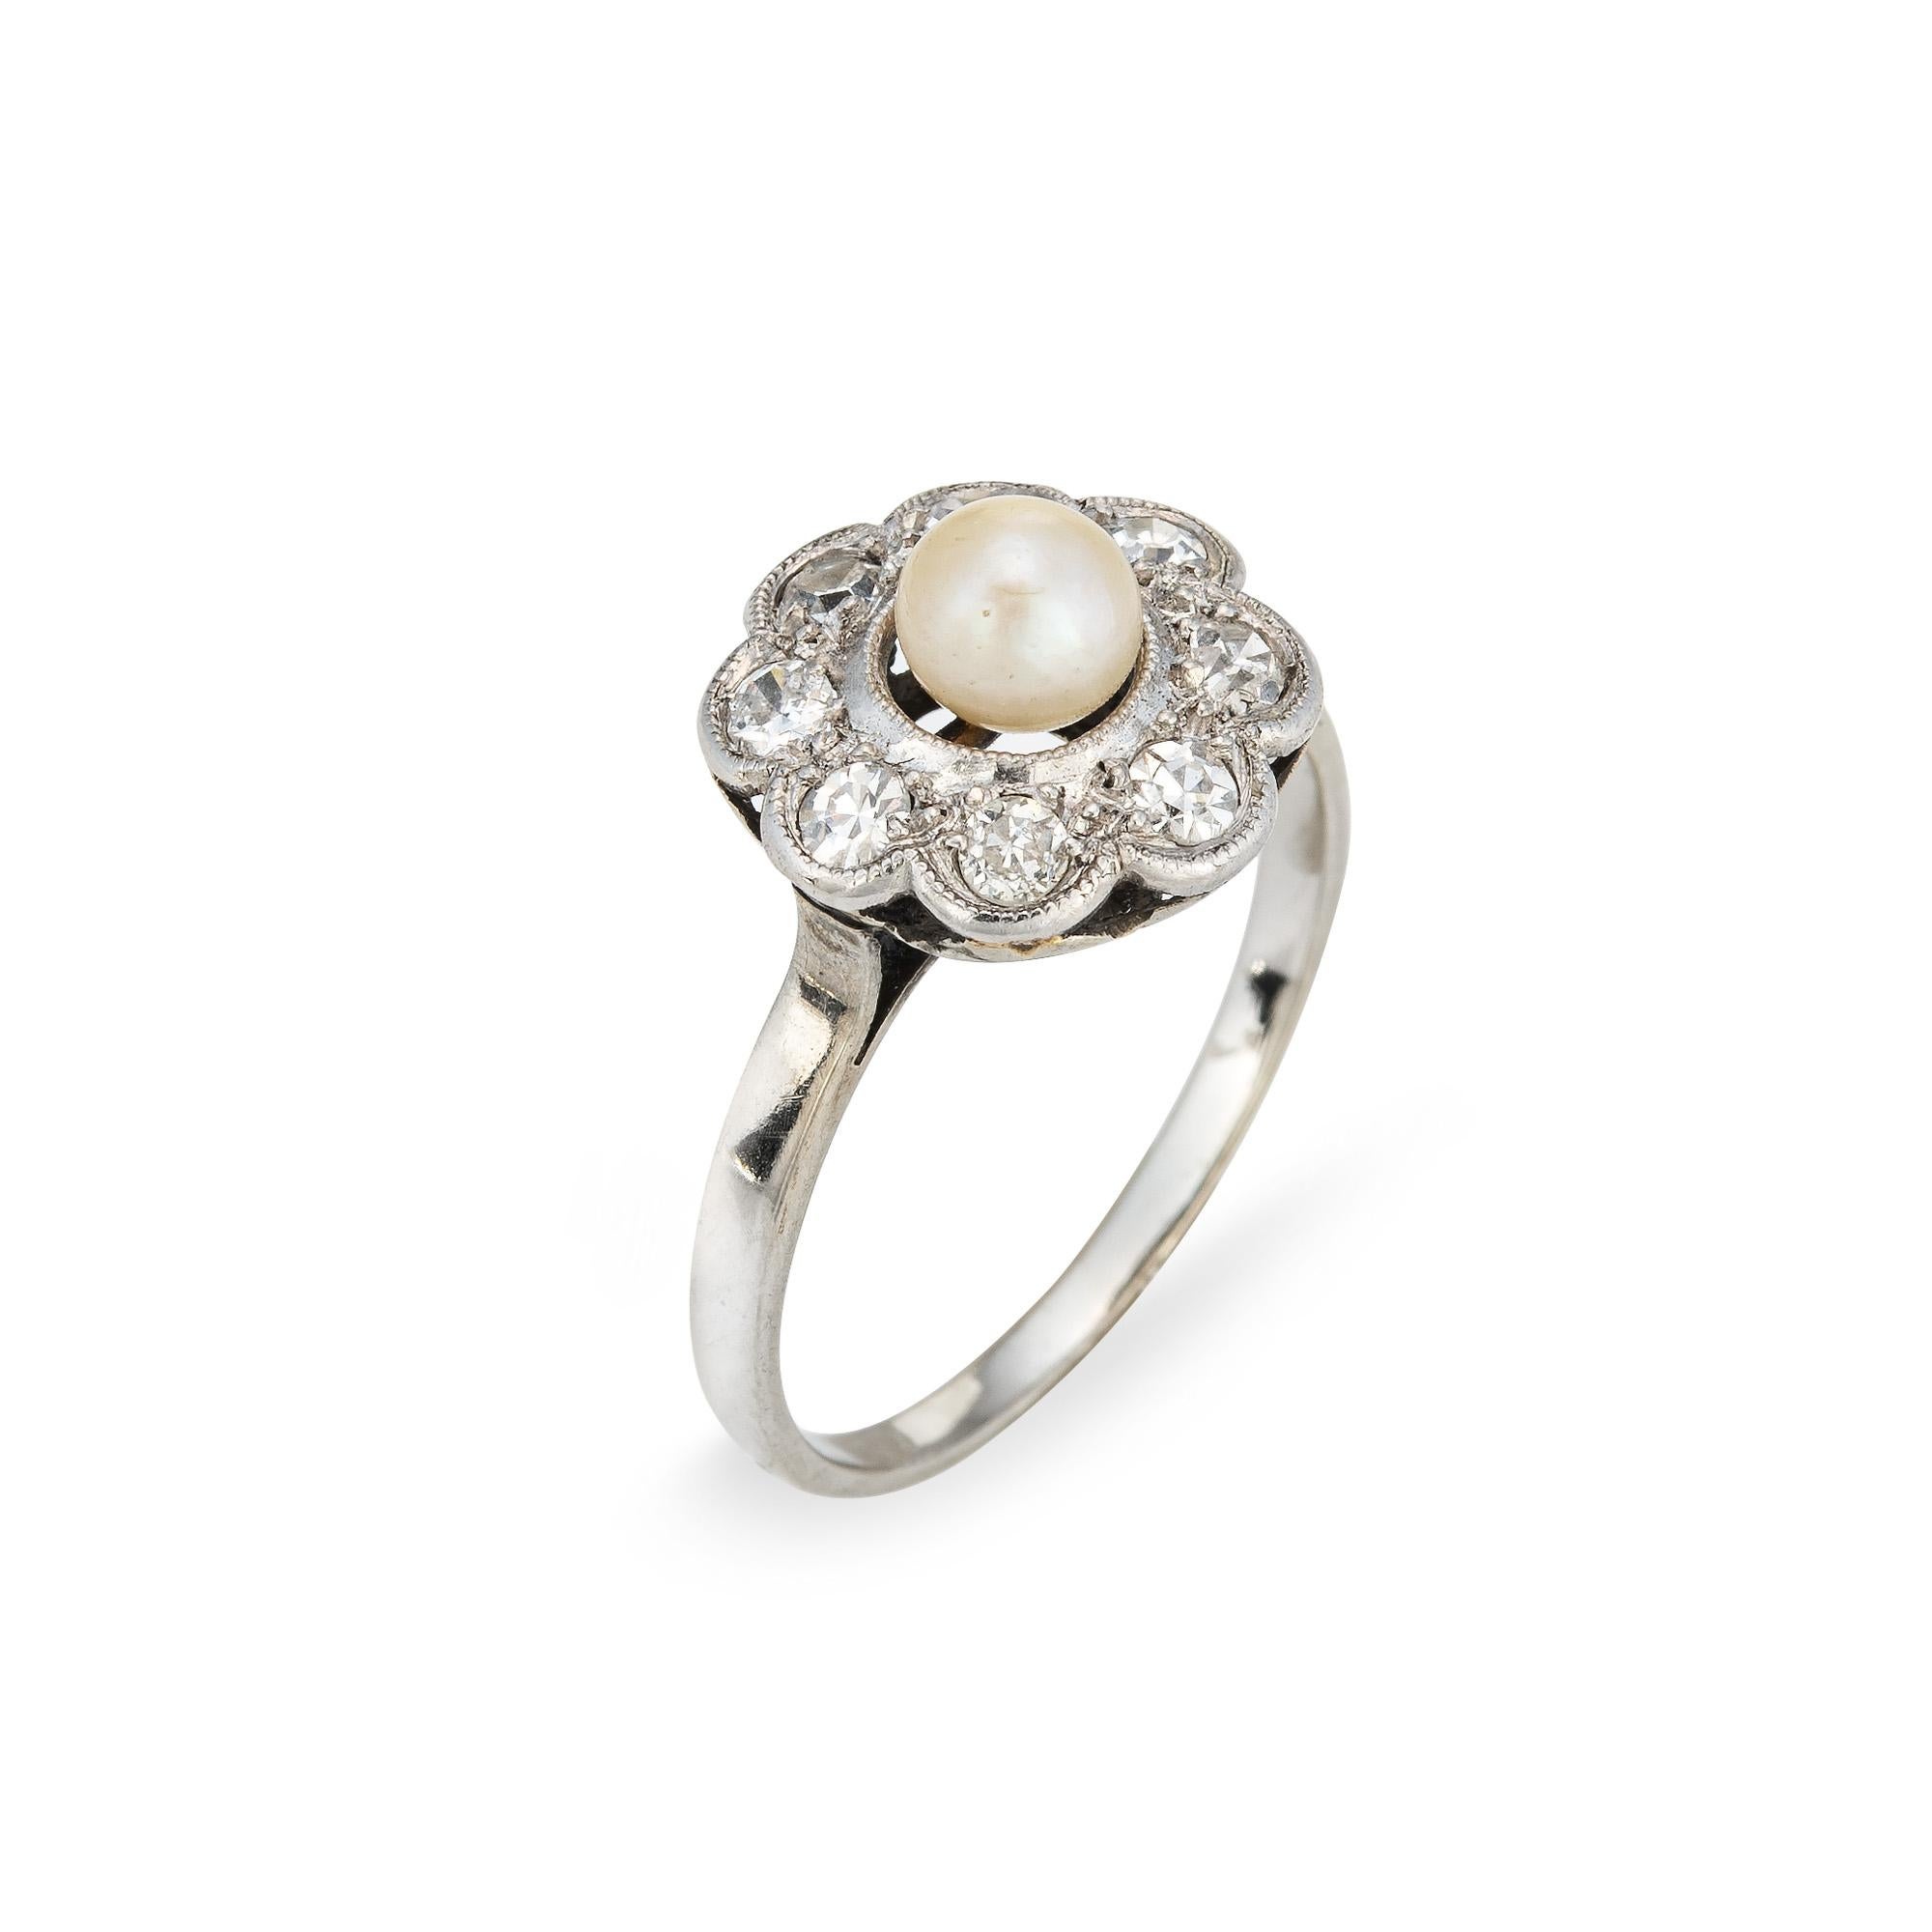 Stilvoller antiker edwardianischer Perlen- und Diamantring aus Platin mit 18 Karat Weißgold (um 1900 bis 1910).
In der Mitte befindet sich eine 5 mm große Perle, die mit acht alten Diamanten von schätzungsweise 0,06 Karat im Einzelschliff besetzt